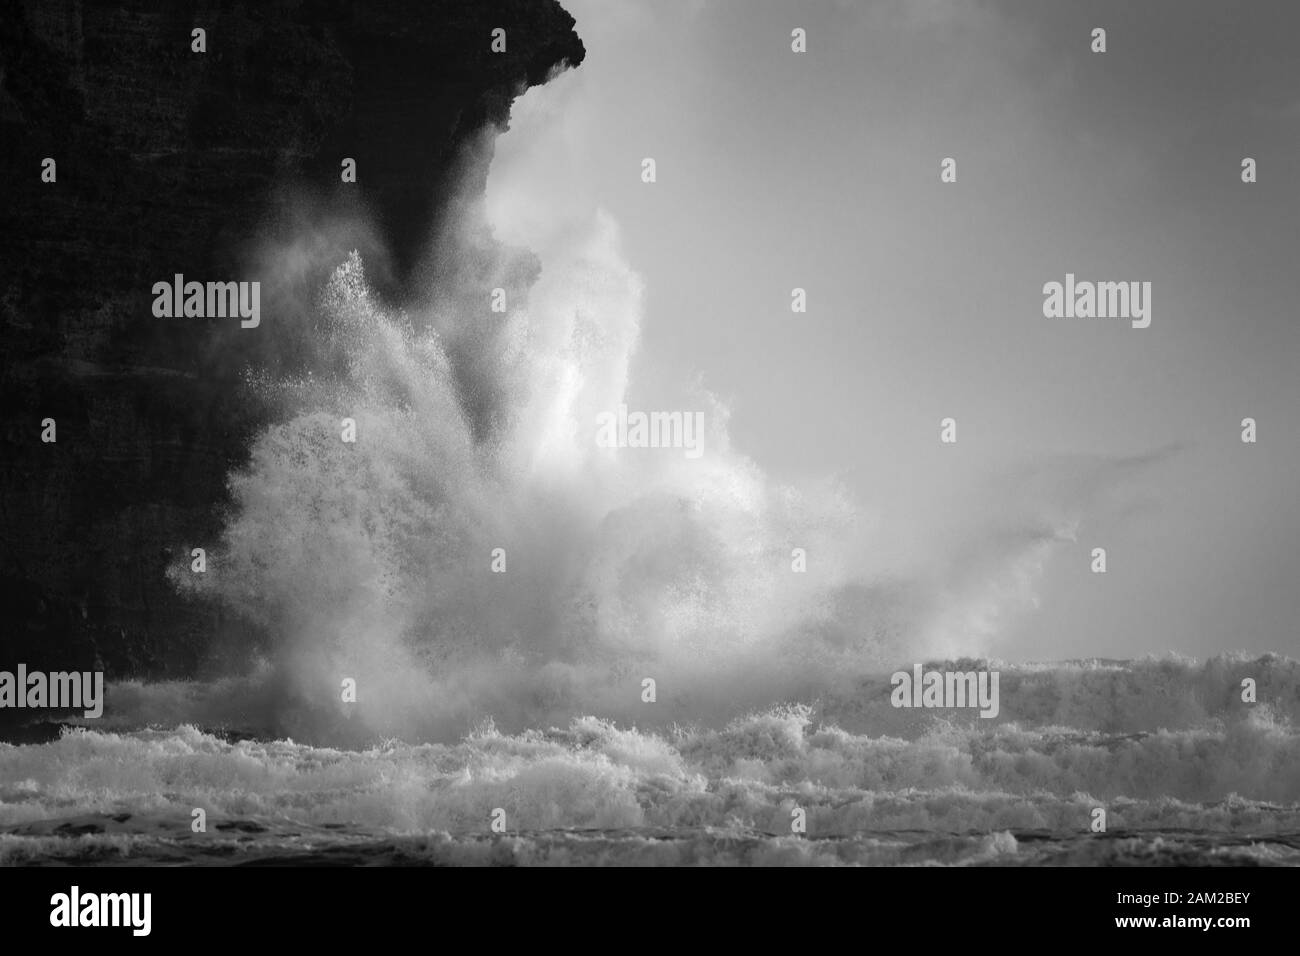 Immagine in bianco e nero di enormi onde che si infrangono contro le rocce di Piha Beach, Waitakere, Nuova Zelanda Foto Stock